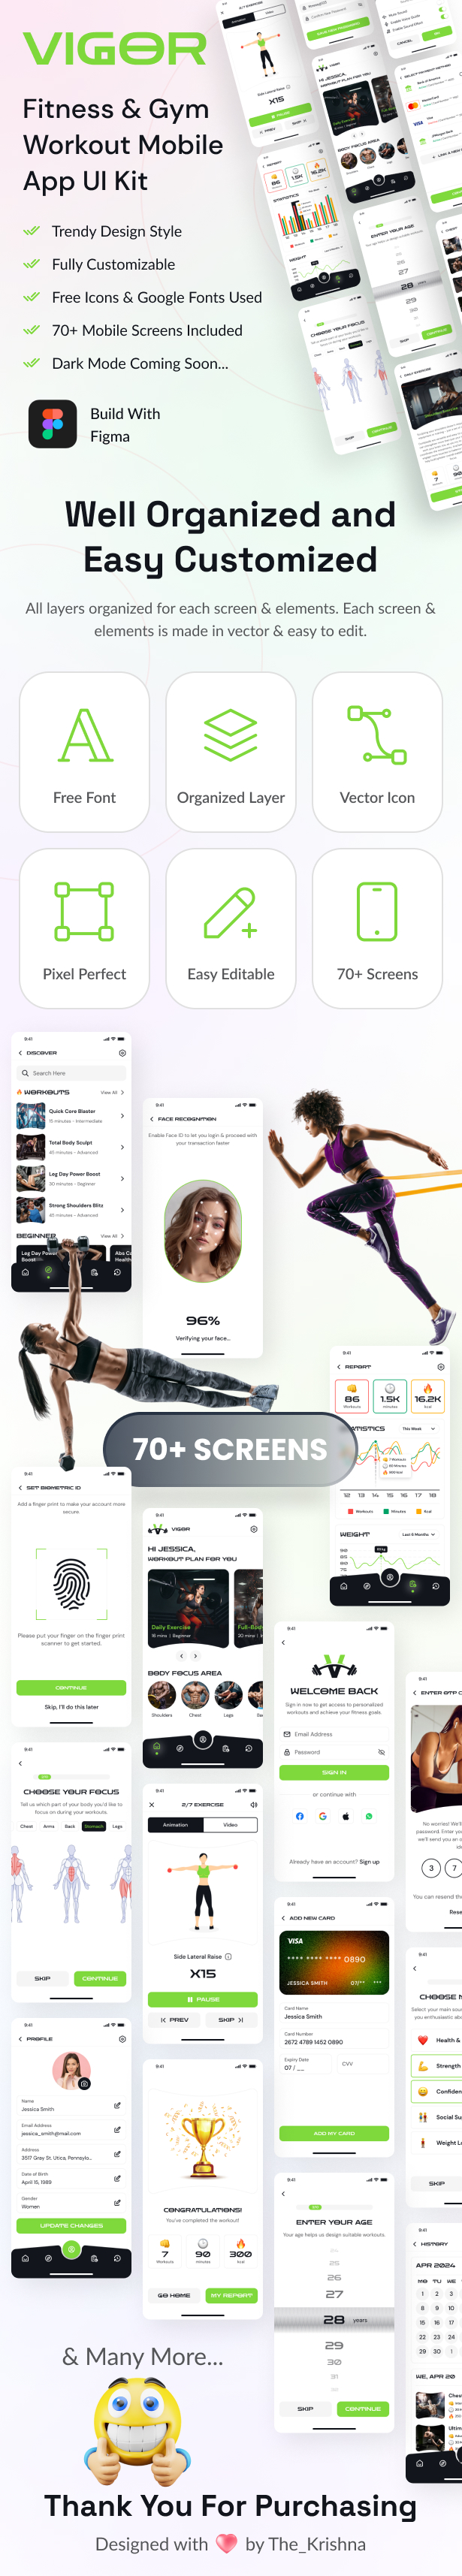 Fitness & Gym Workout Mobile App Figma UI Kit - Vigor Health - 2